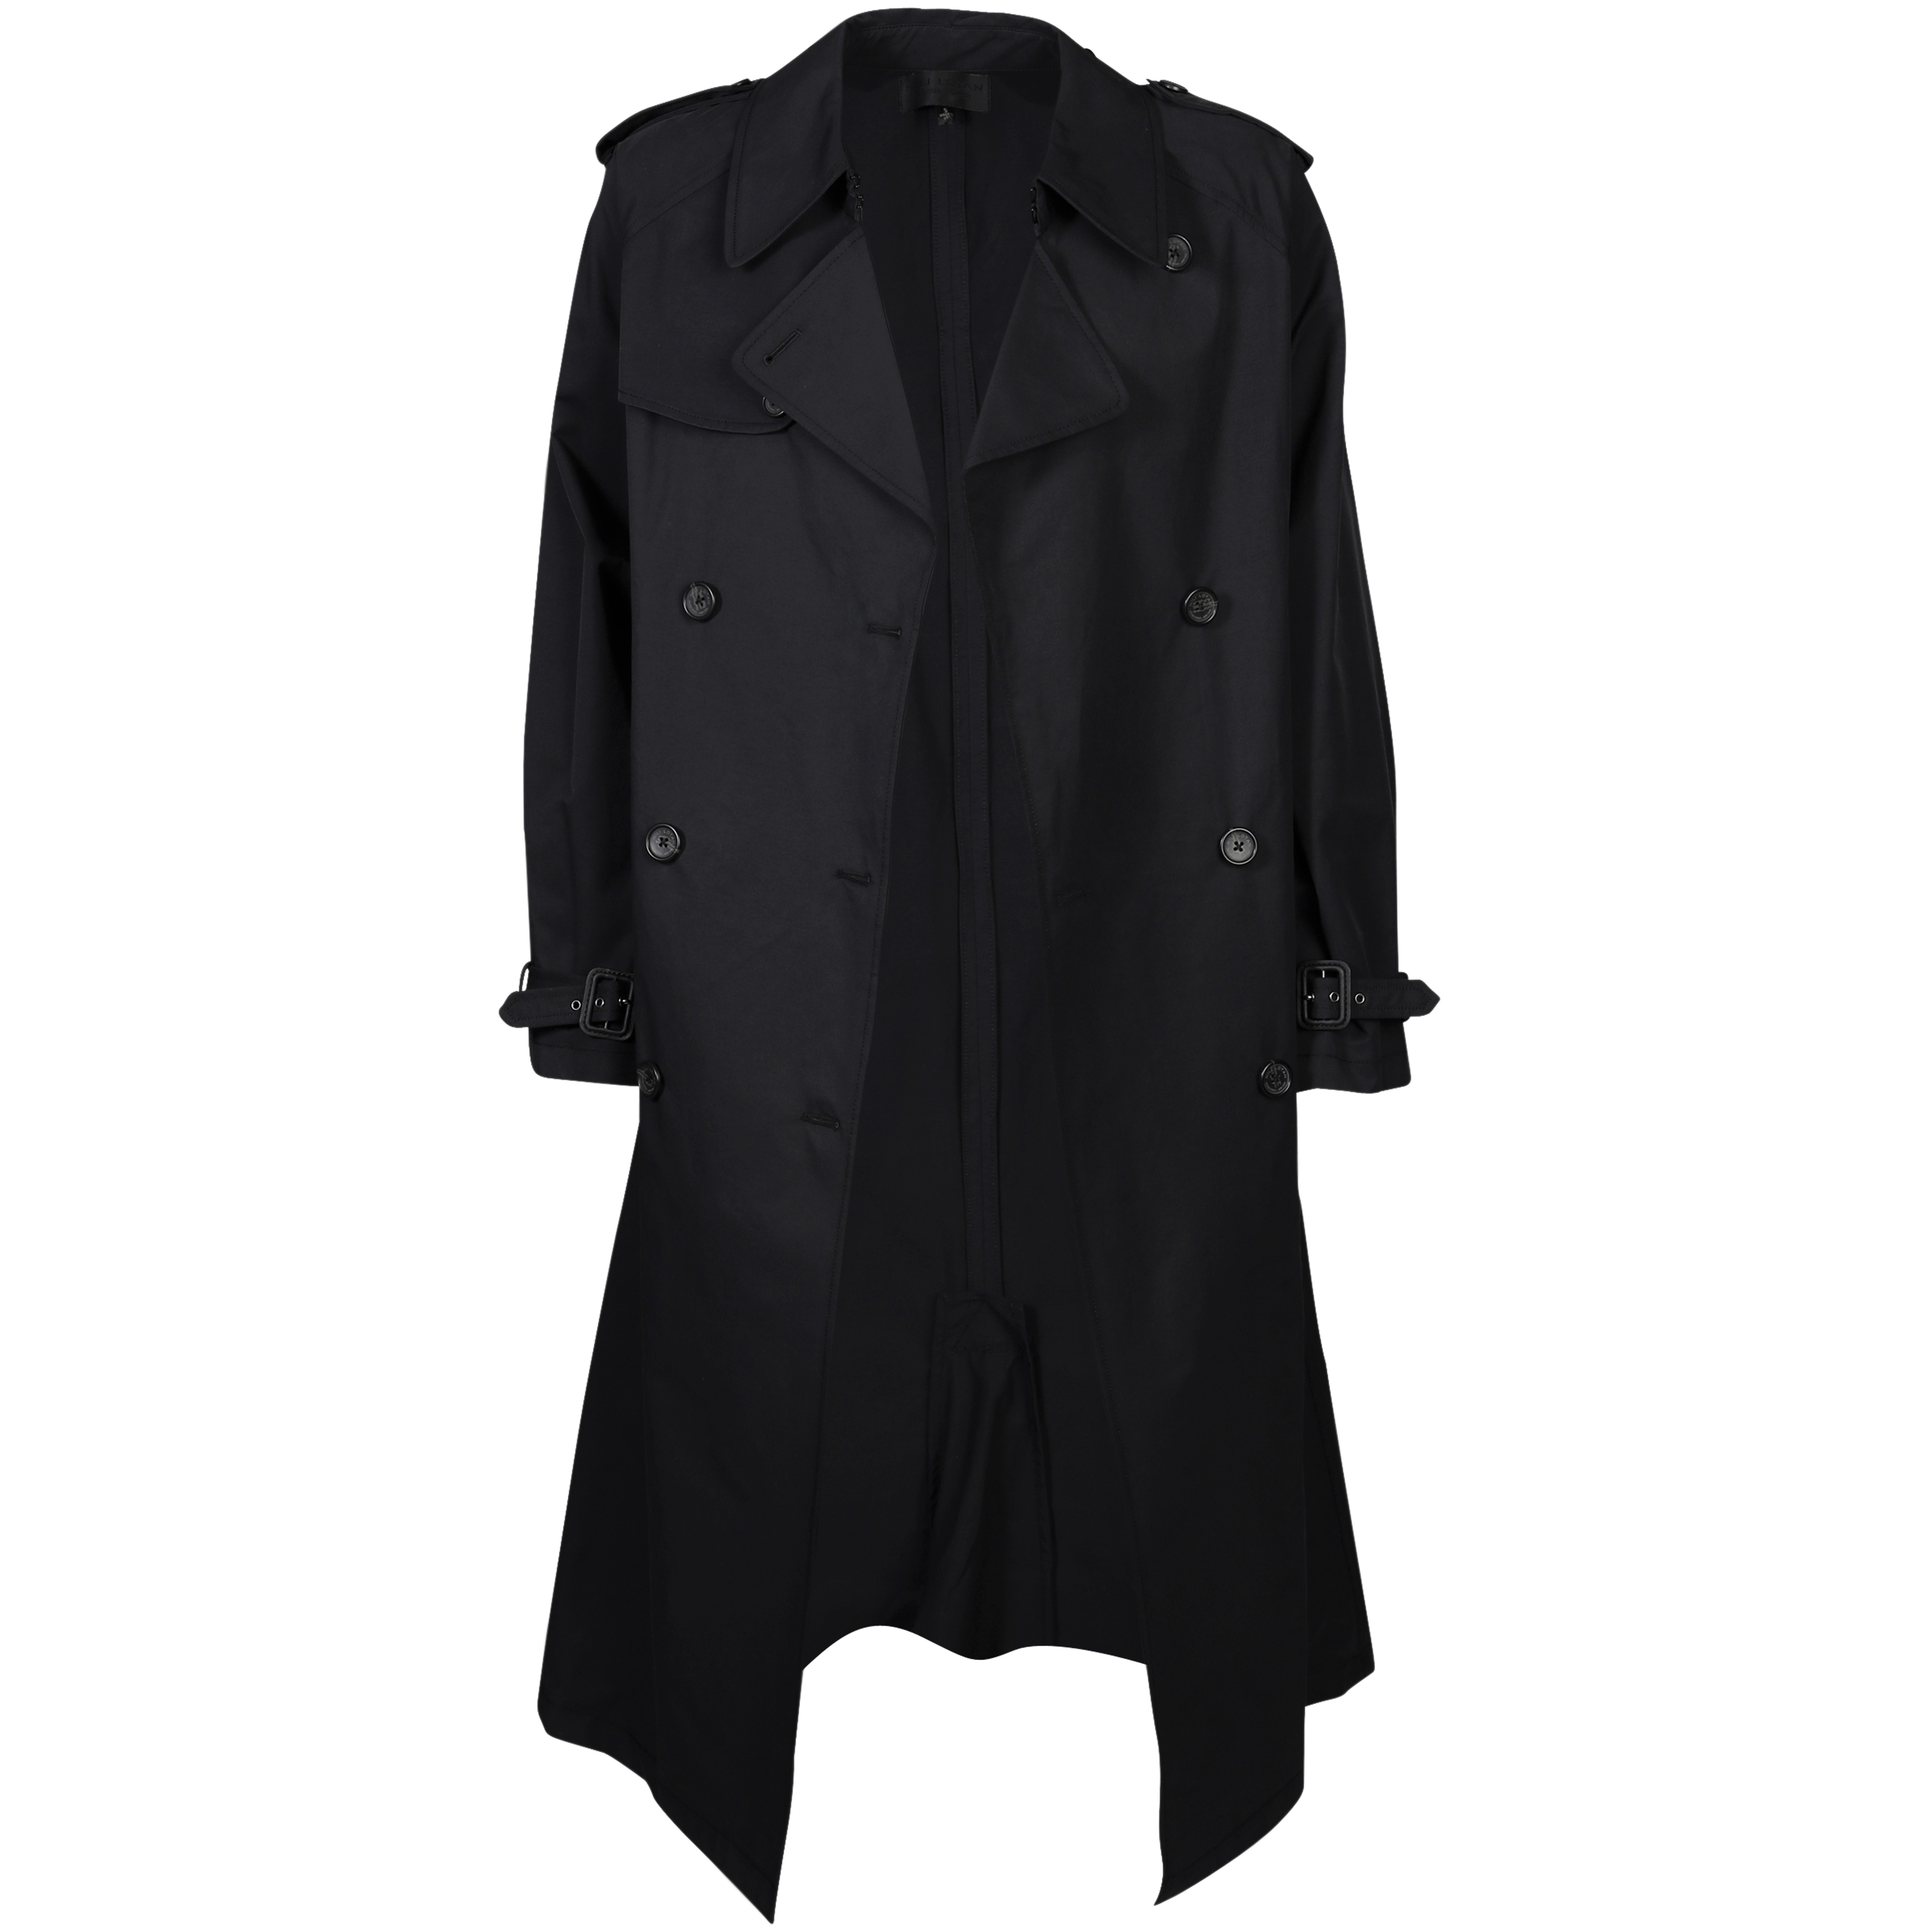 Nili Lotan Tanner Trench Coat in Black